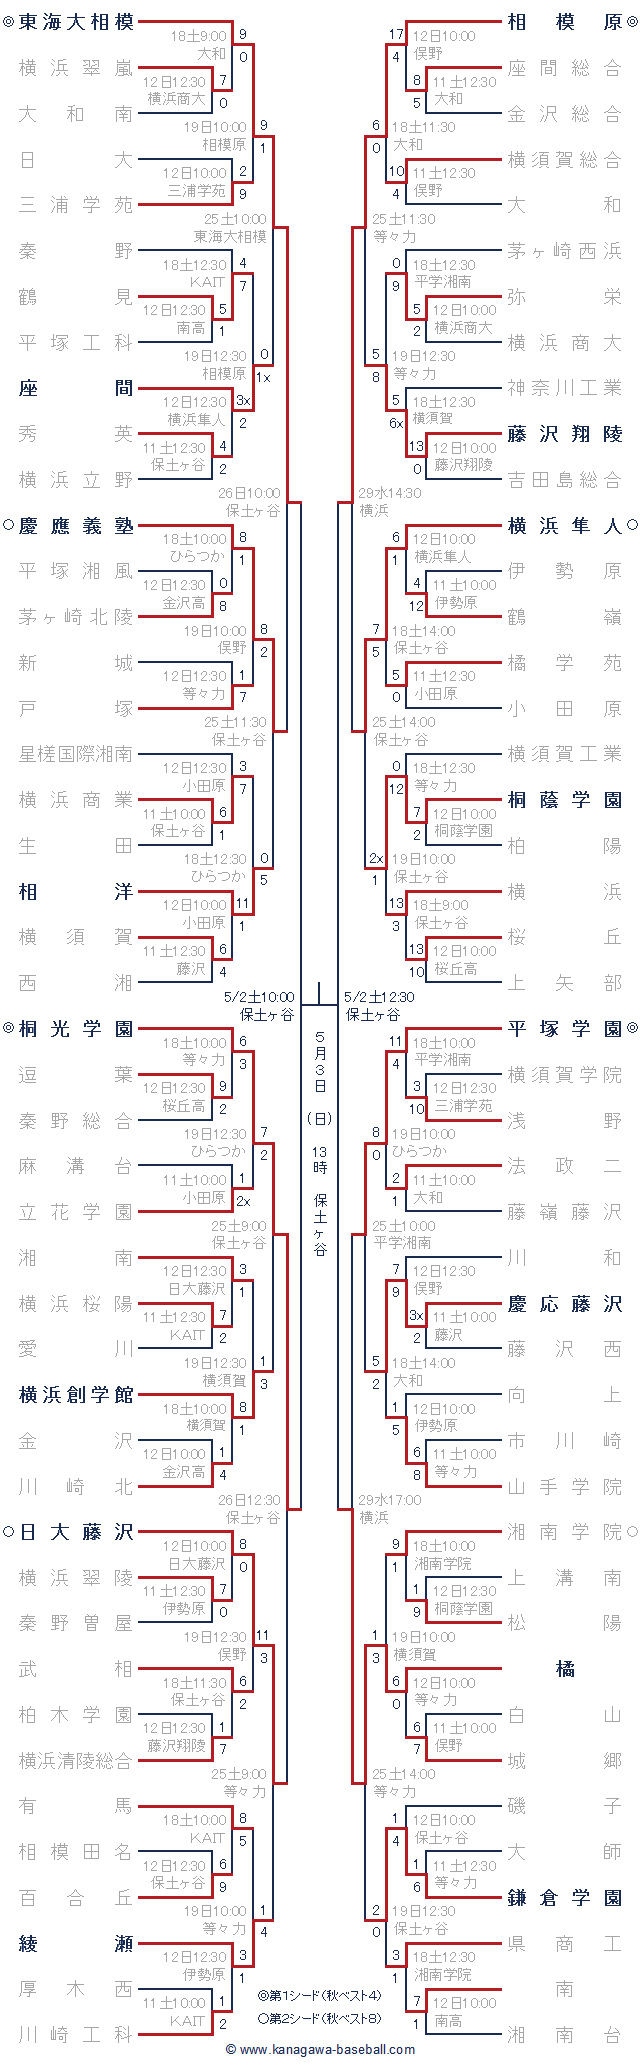 2015年春季神奈川県大会トーナメント表